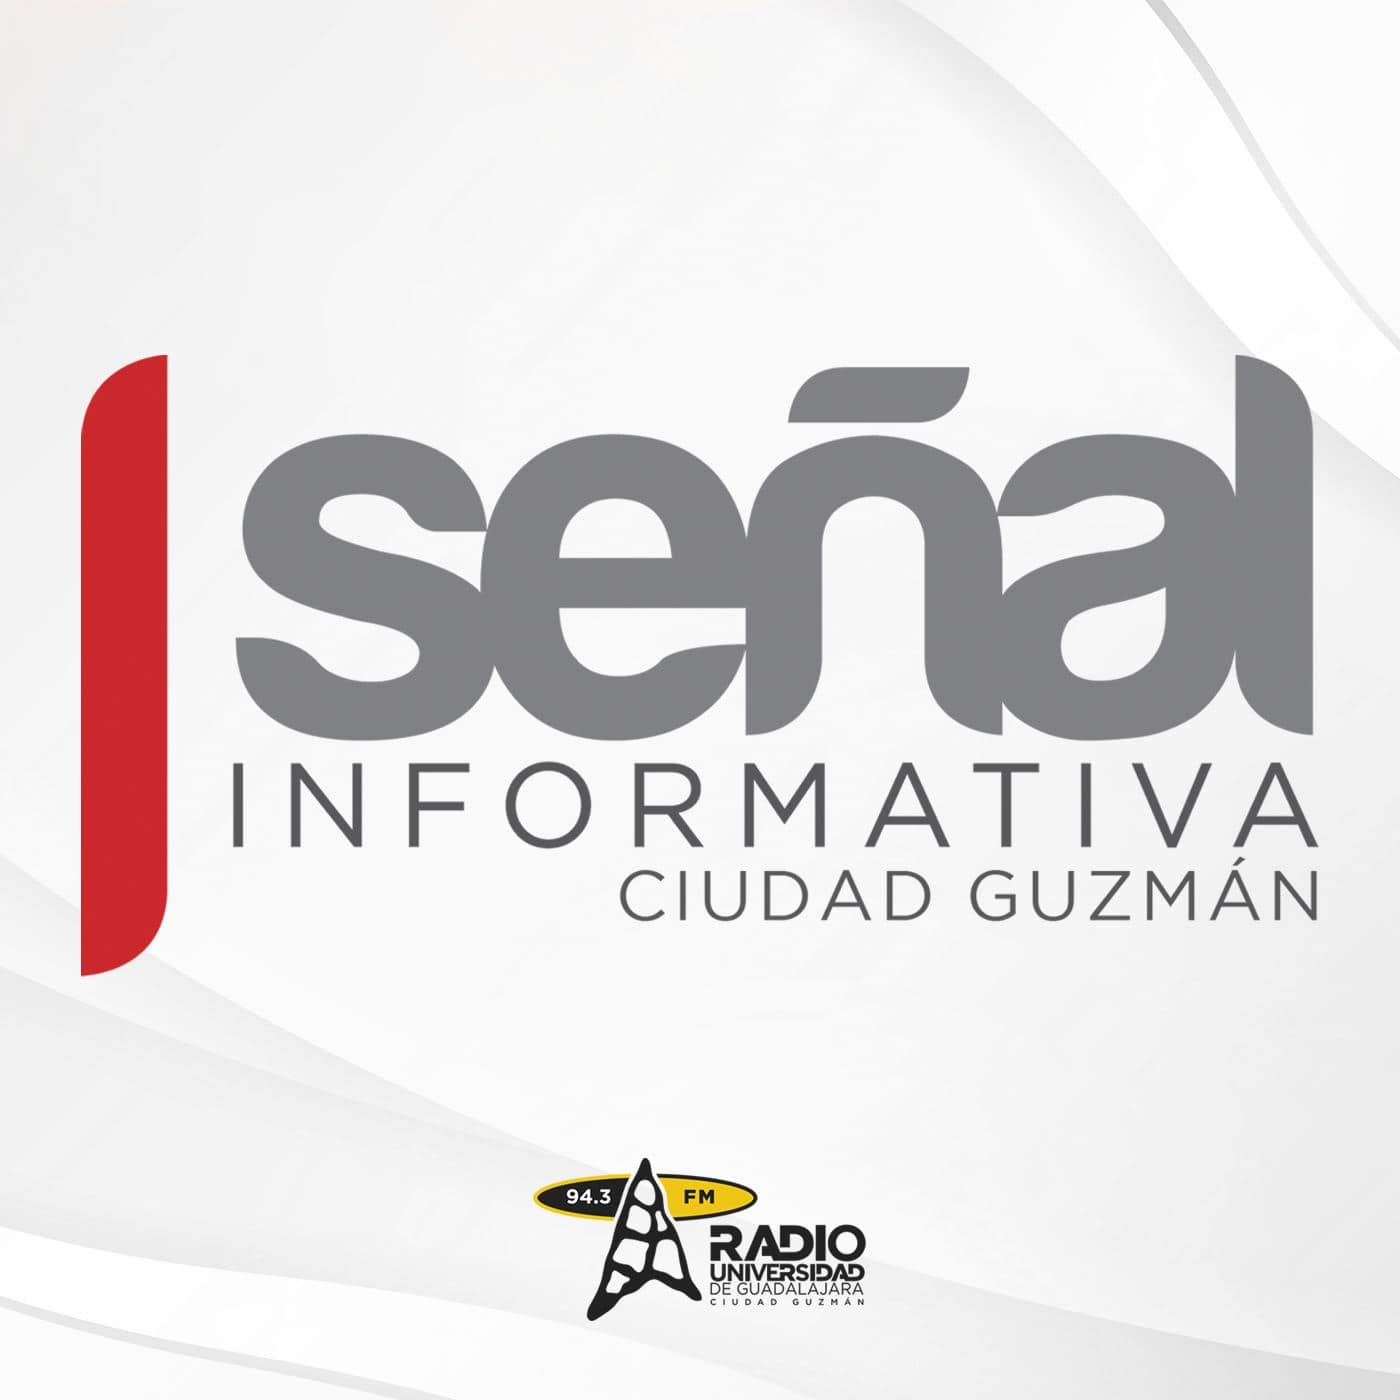 Señal Informativa Ciudad Guzmán, 06 de noviembre